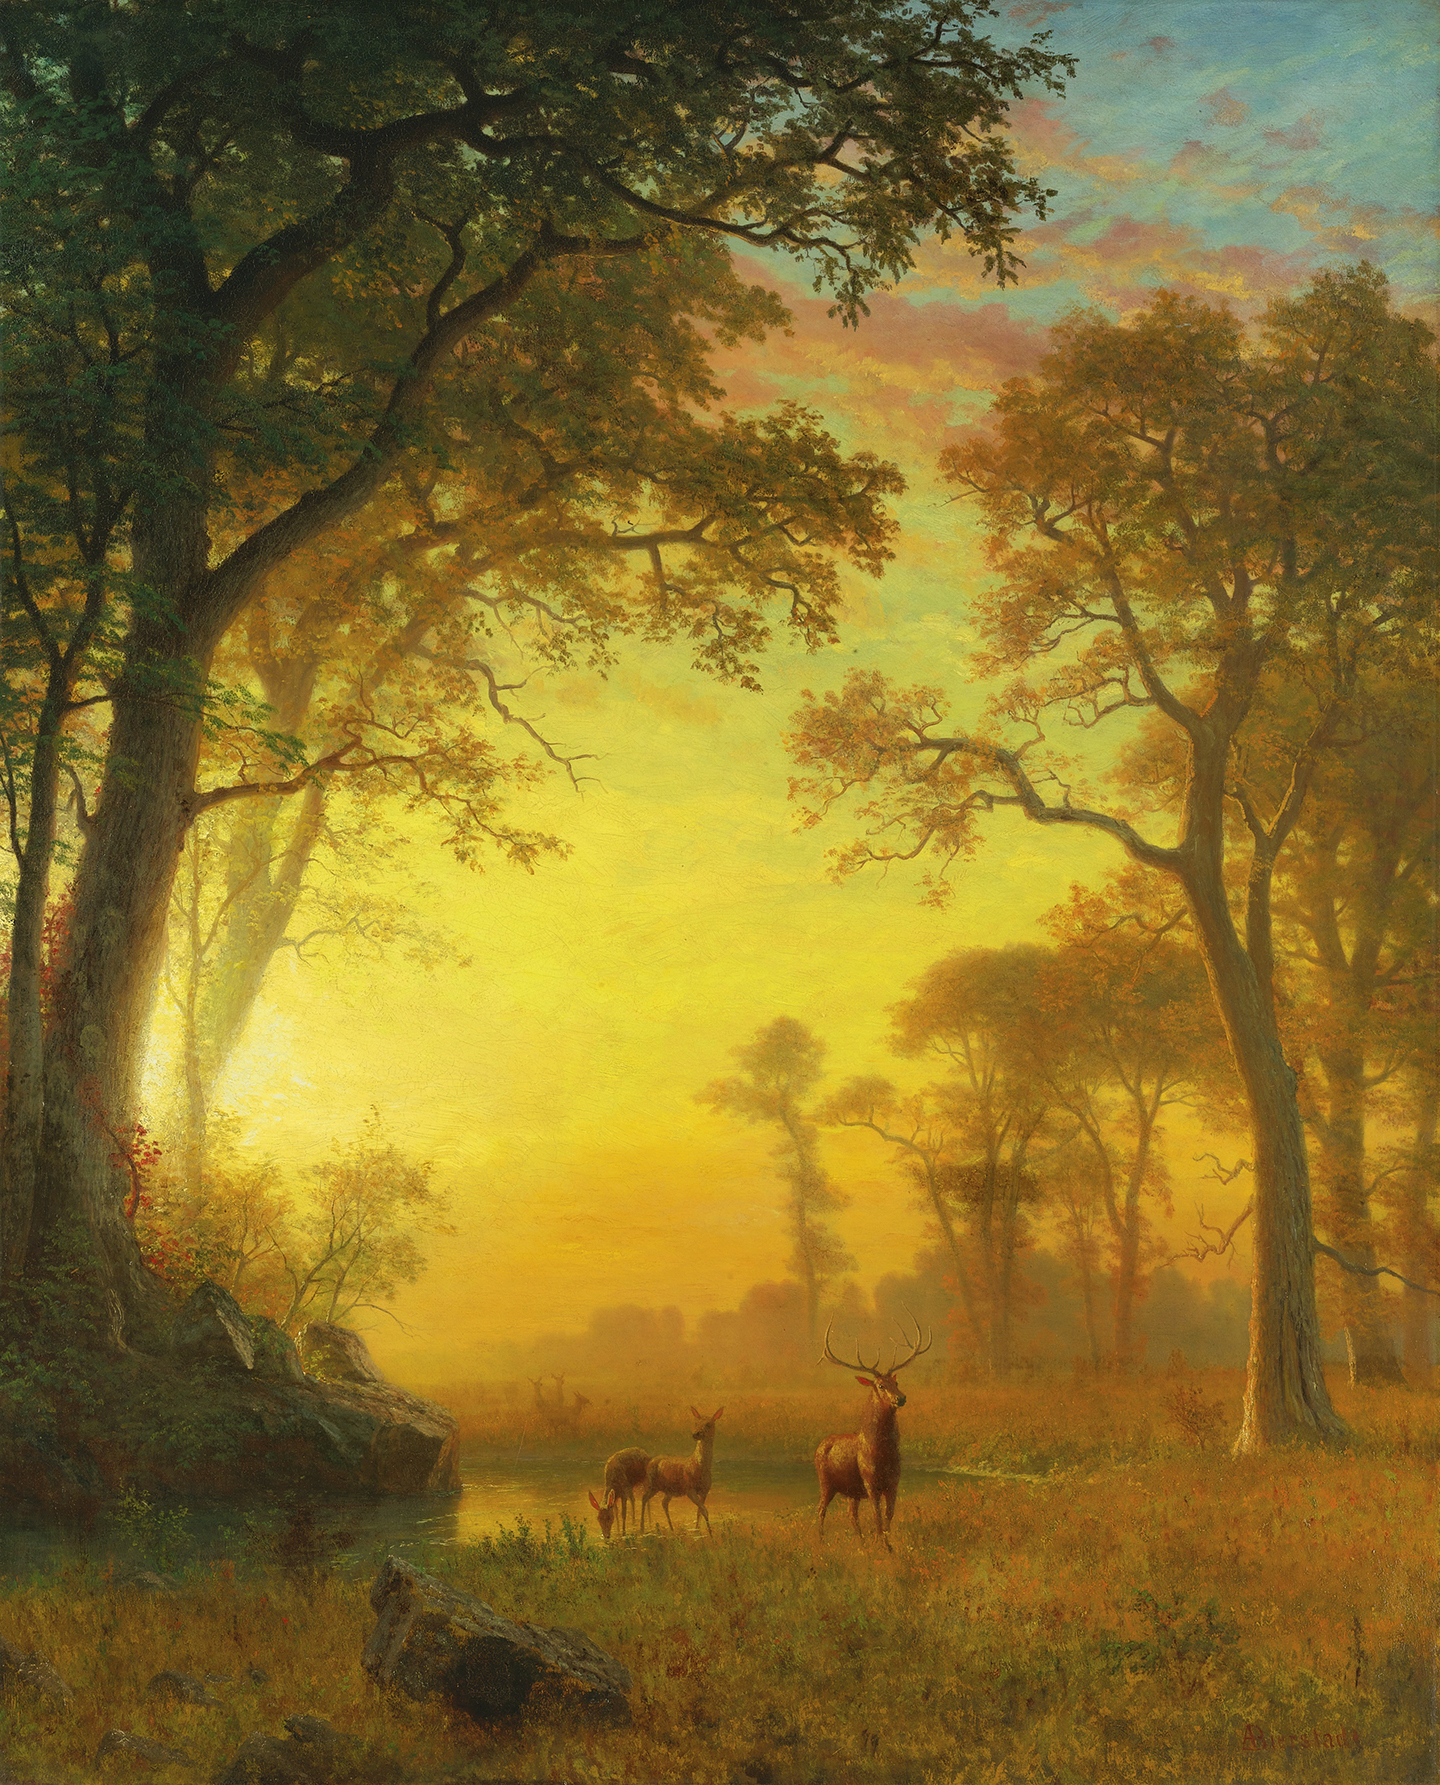 Bức tranh “Light in the Forest” (Ánh Sáng trong Khu Rừng), những năm 1870, của họa sỹ Albert Bierstadt. Sơn dầu trên vải canvas; 51.9 inch x 42.1 inch (132cm x 107cm). Bộ sưu tập tư nhân. (Ảnh: Tư liệu công cộng)